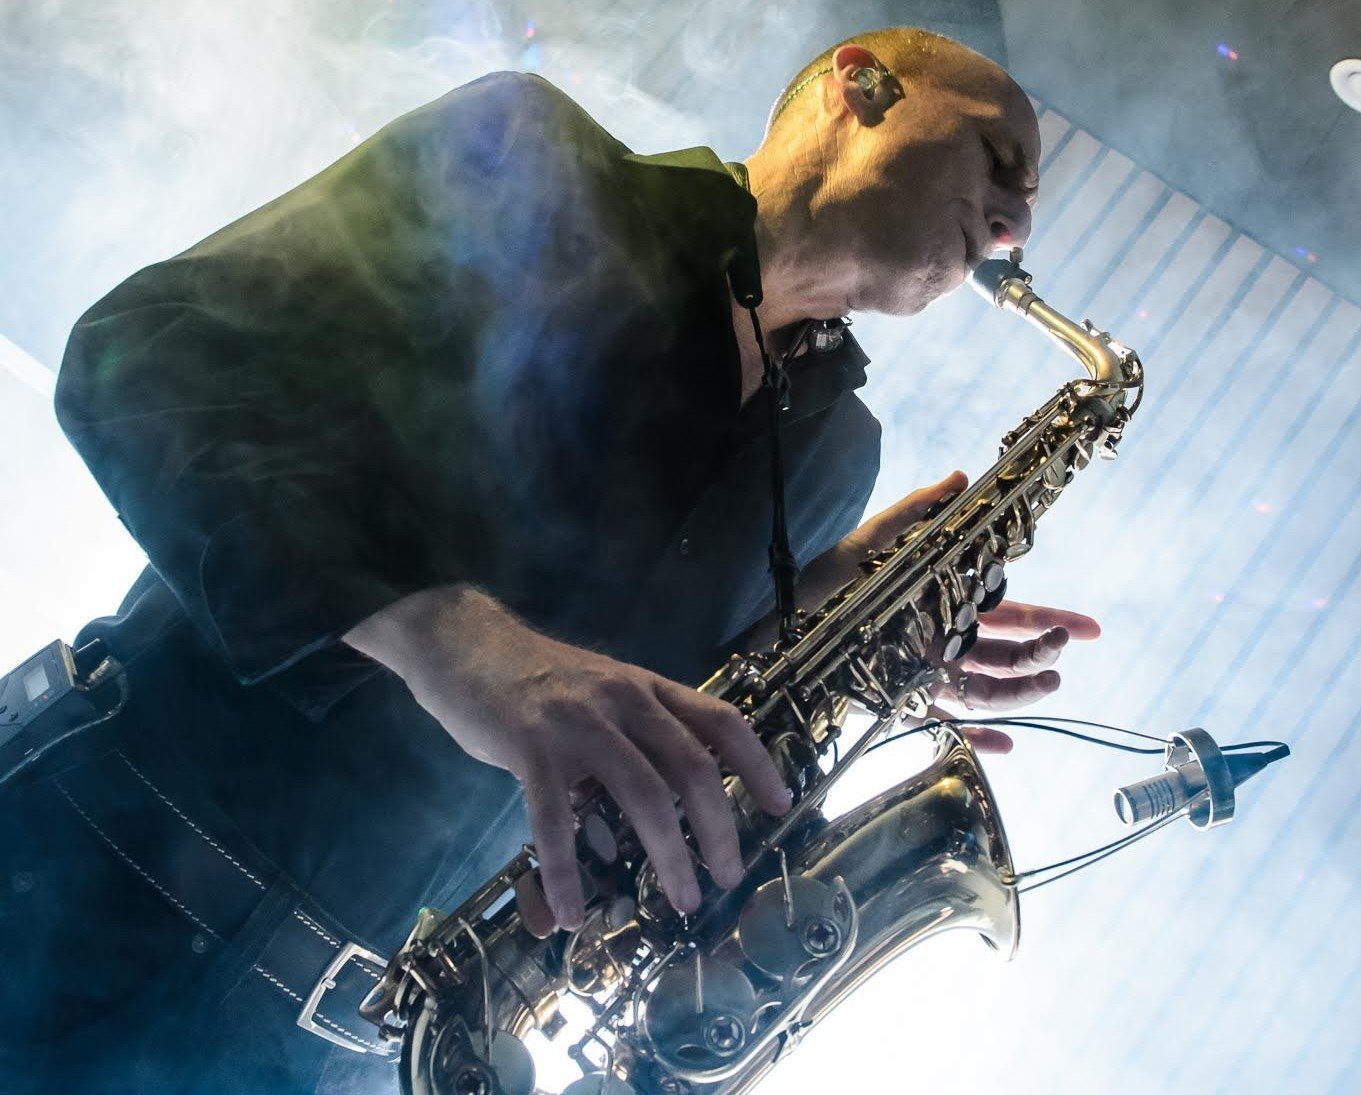 Saxofonist Arjan | Artiest huren bij Swinging.nl